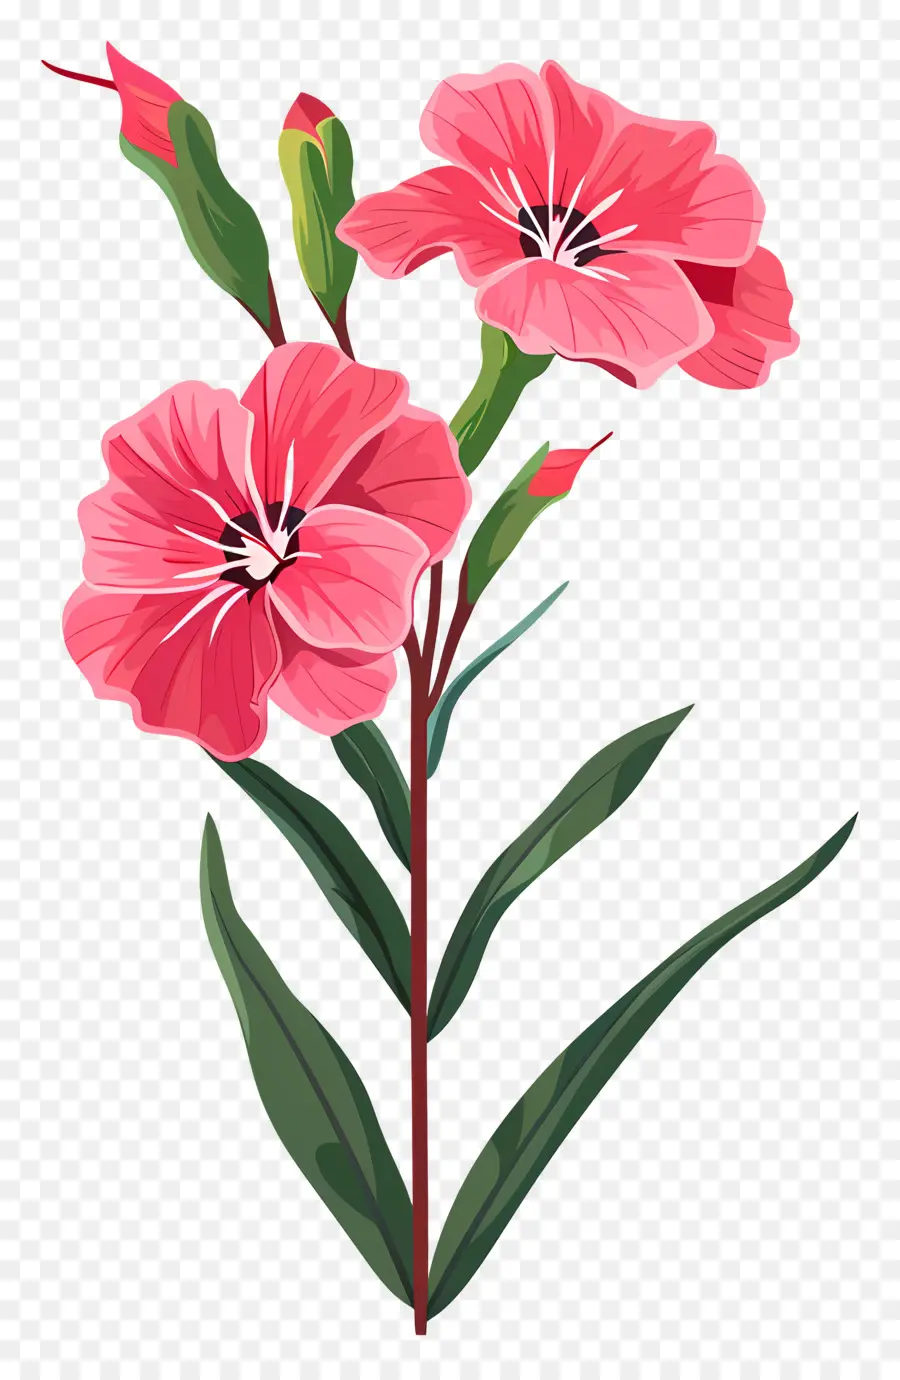 rosa Blume - Nahaufnahme der rosa Blume mit Blättern